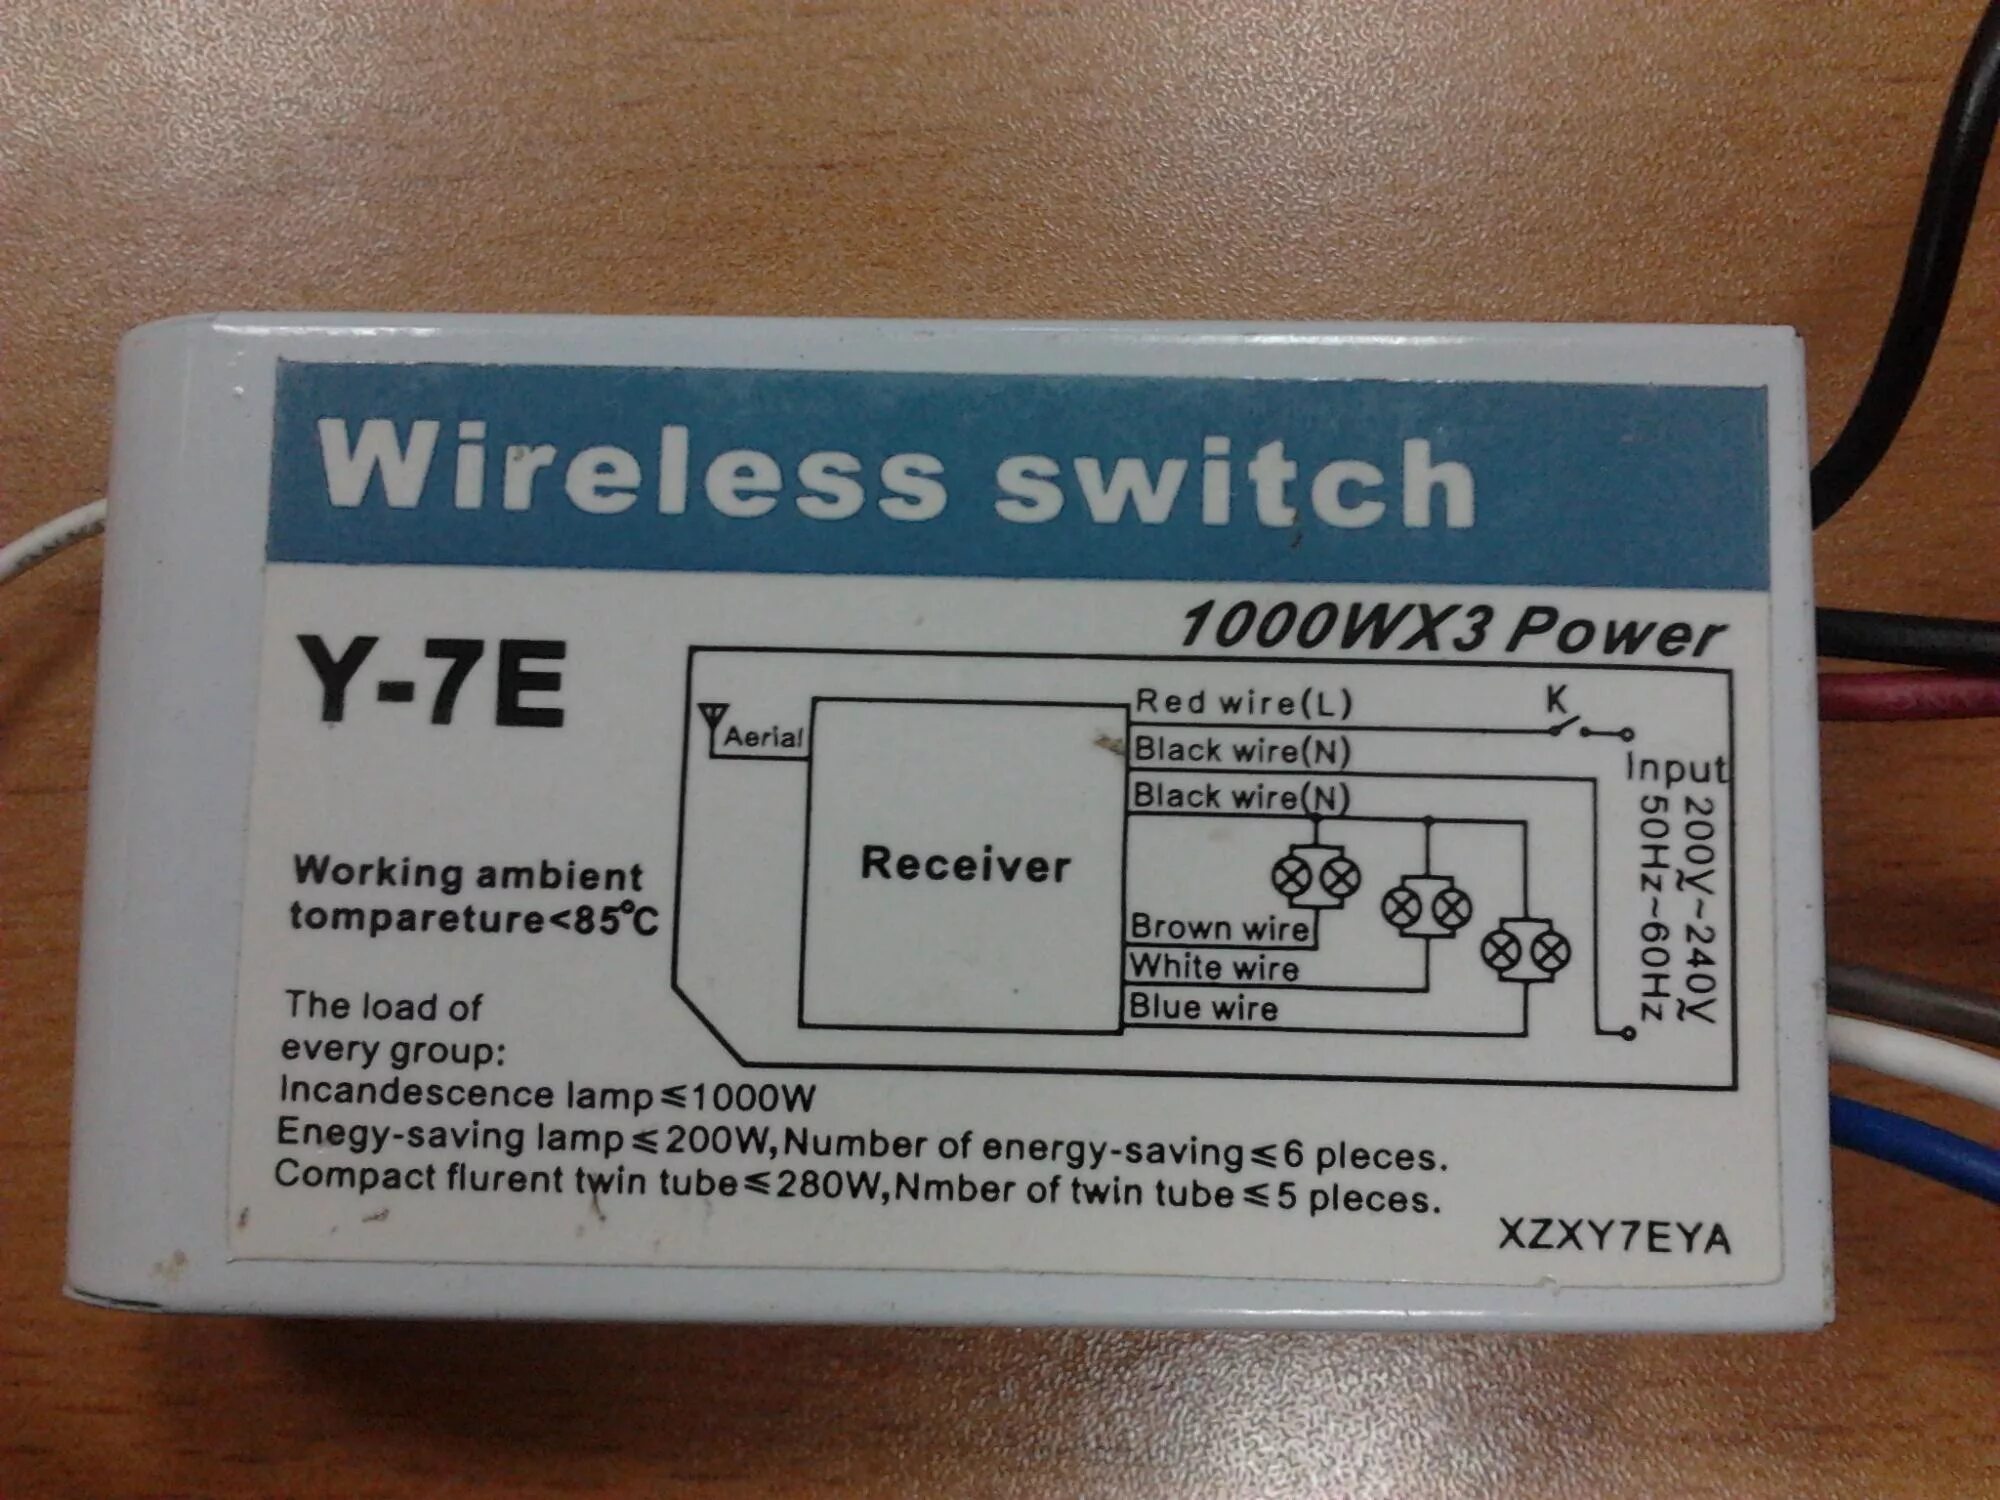 Wireless Switch y-7e 1000wx3. Wireless Switch 1000wx2 Power. Wireless Switch 1000wx2 Power y-2e. Wireless Switch y-7e 1000w 3.